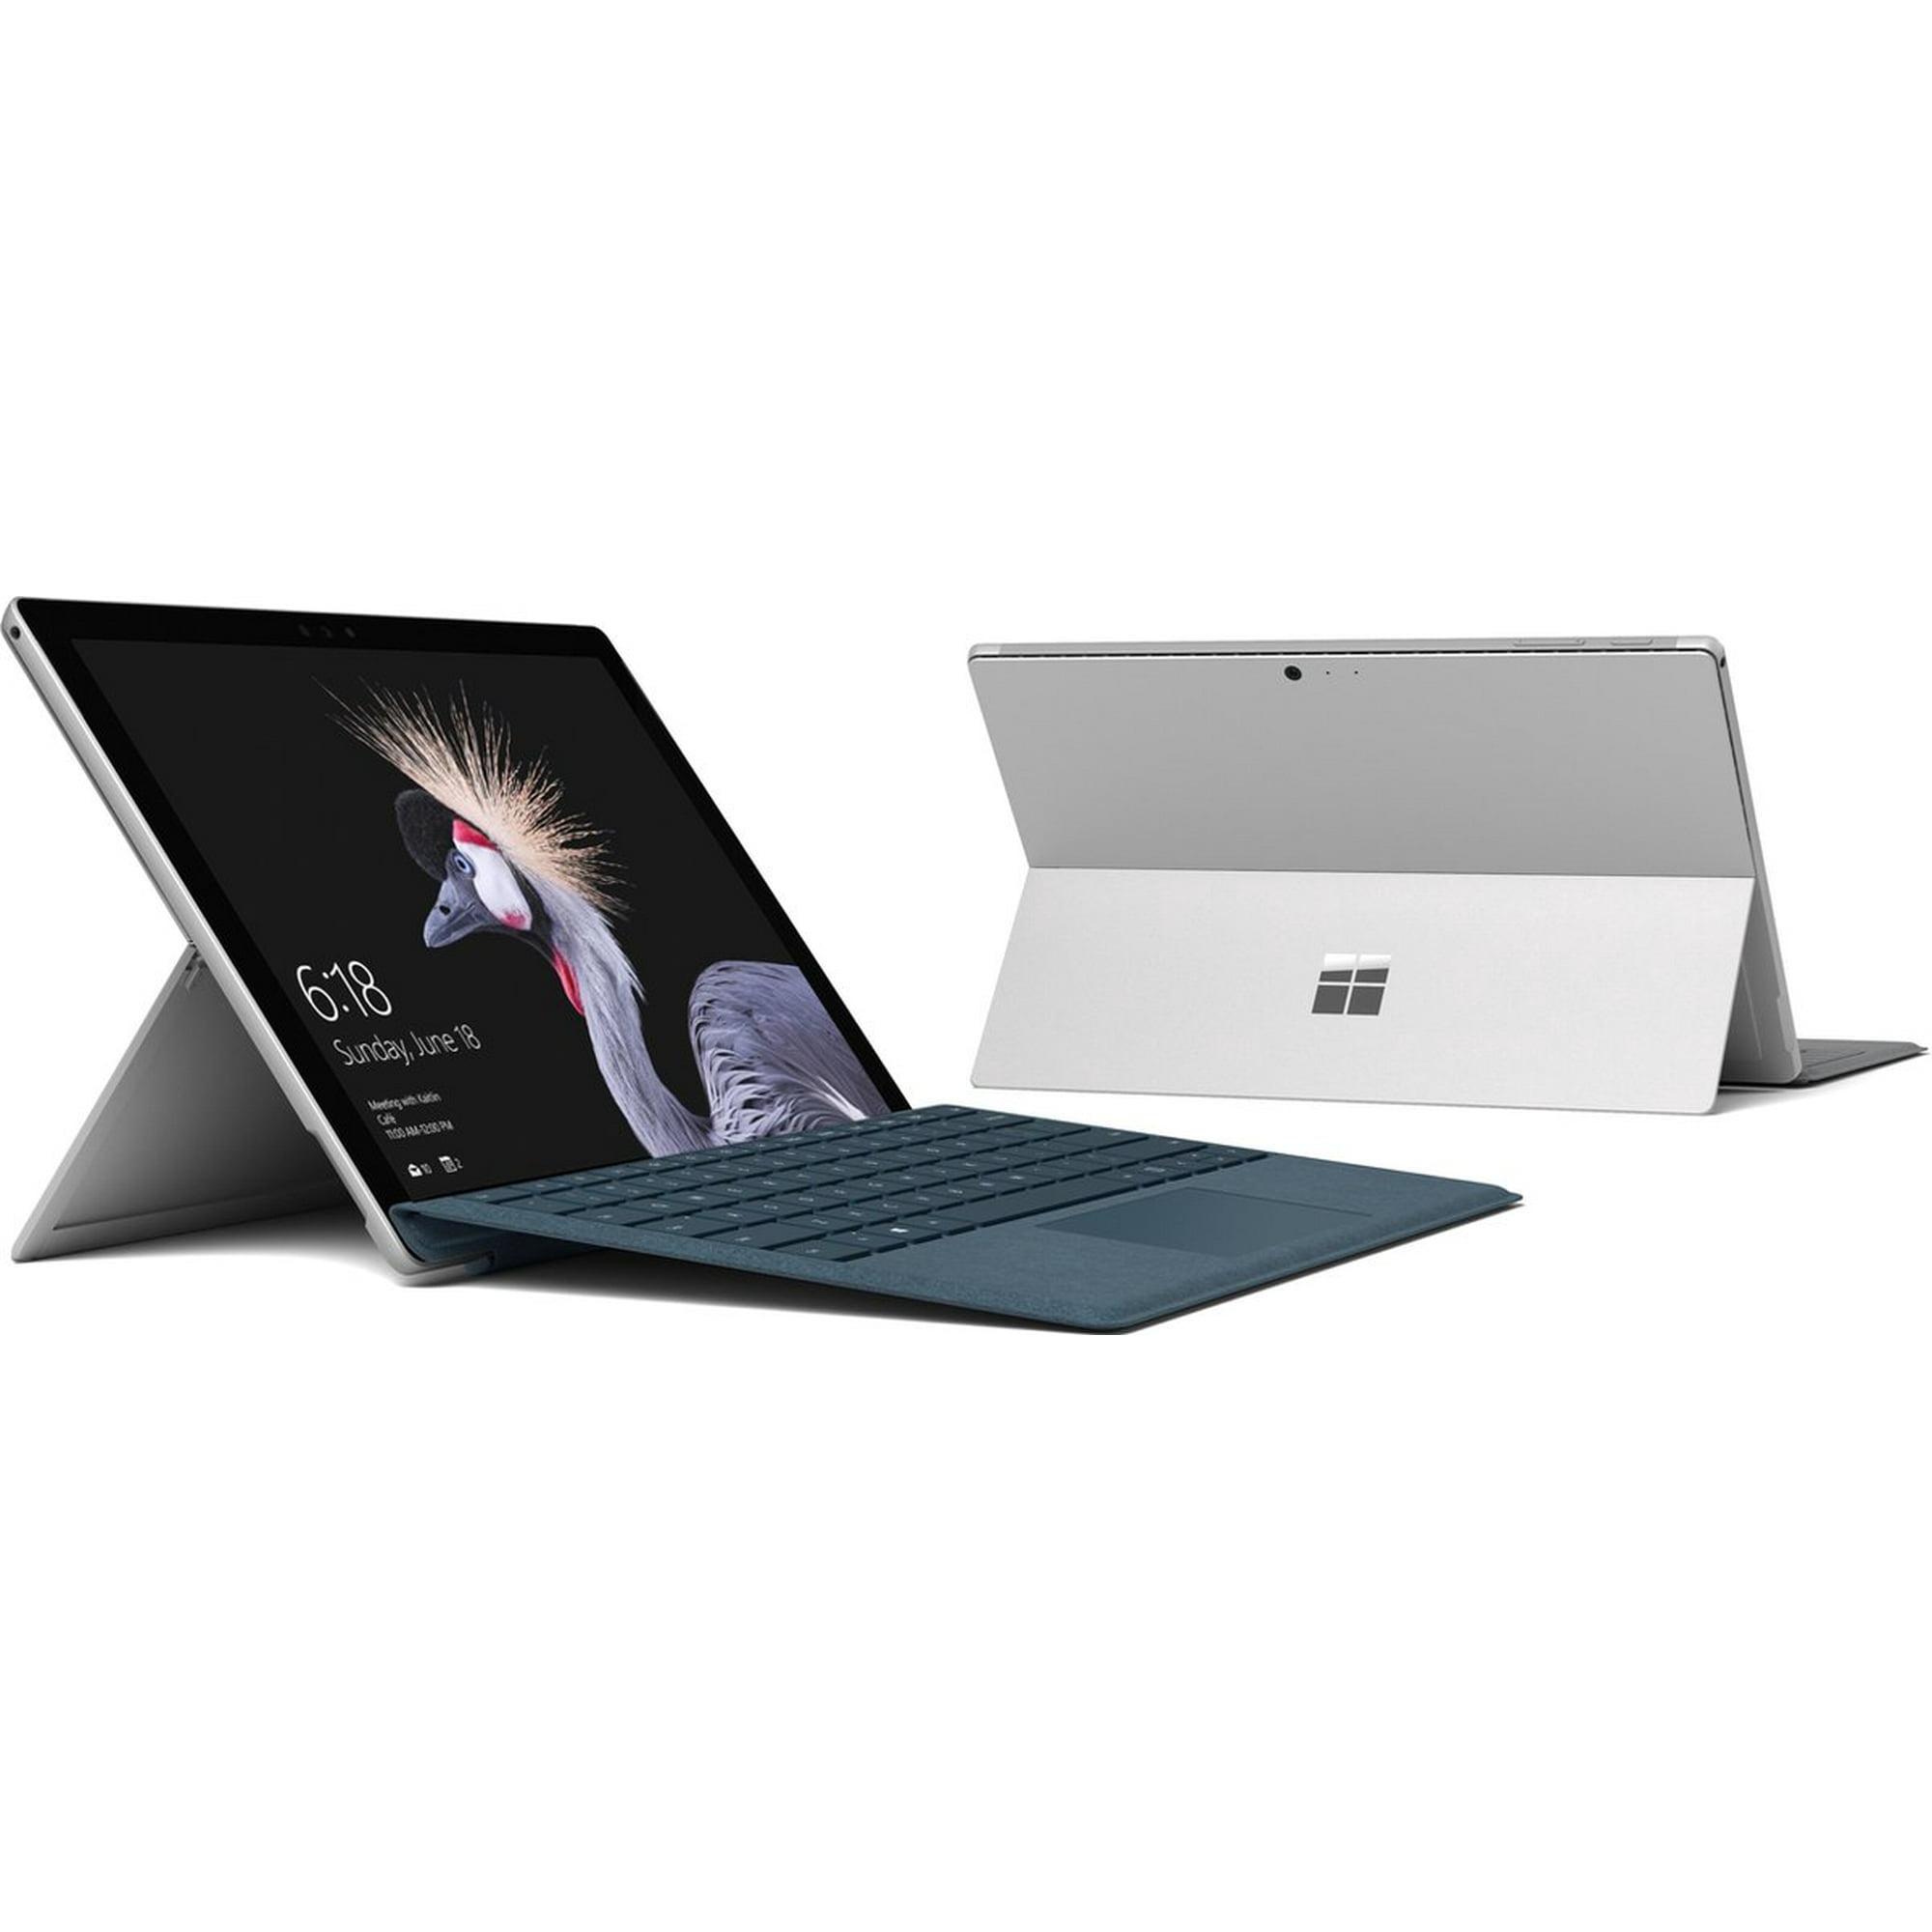 Microsoft Surface Pro 4 Touchscreen Laptop Intel Core i5-6300U